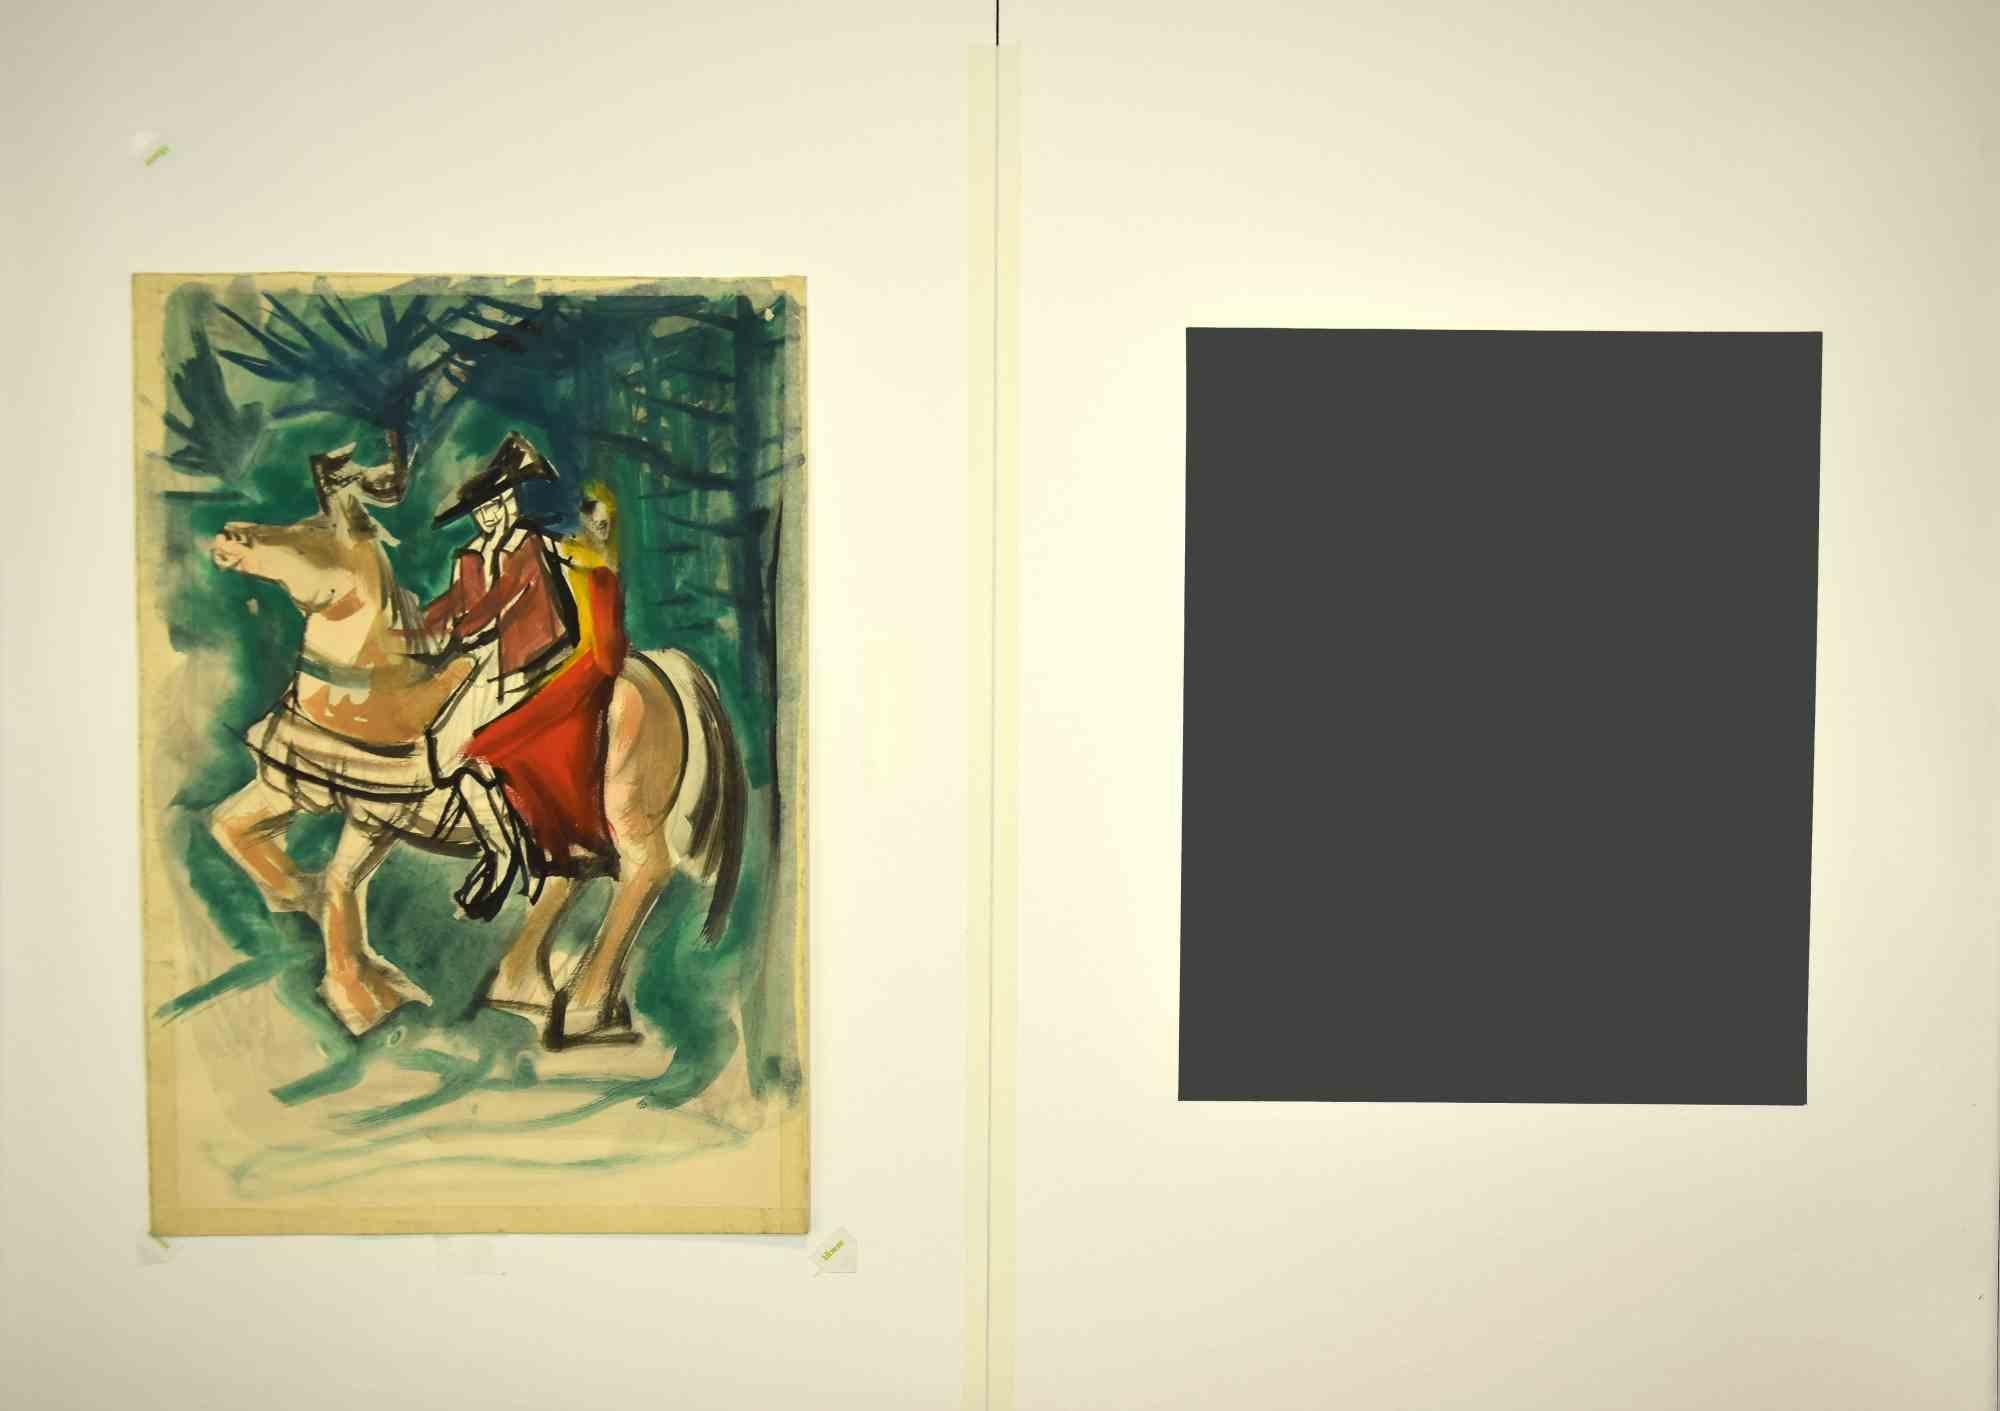 Knight and Girl – Gemälde – 1950er-Jahre (Moderne), Mixed Media Art, von Unknown